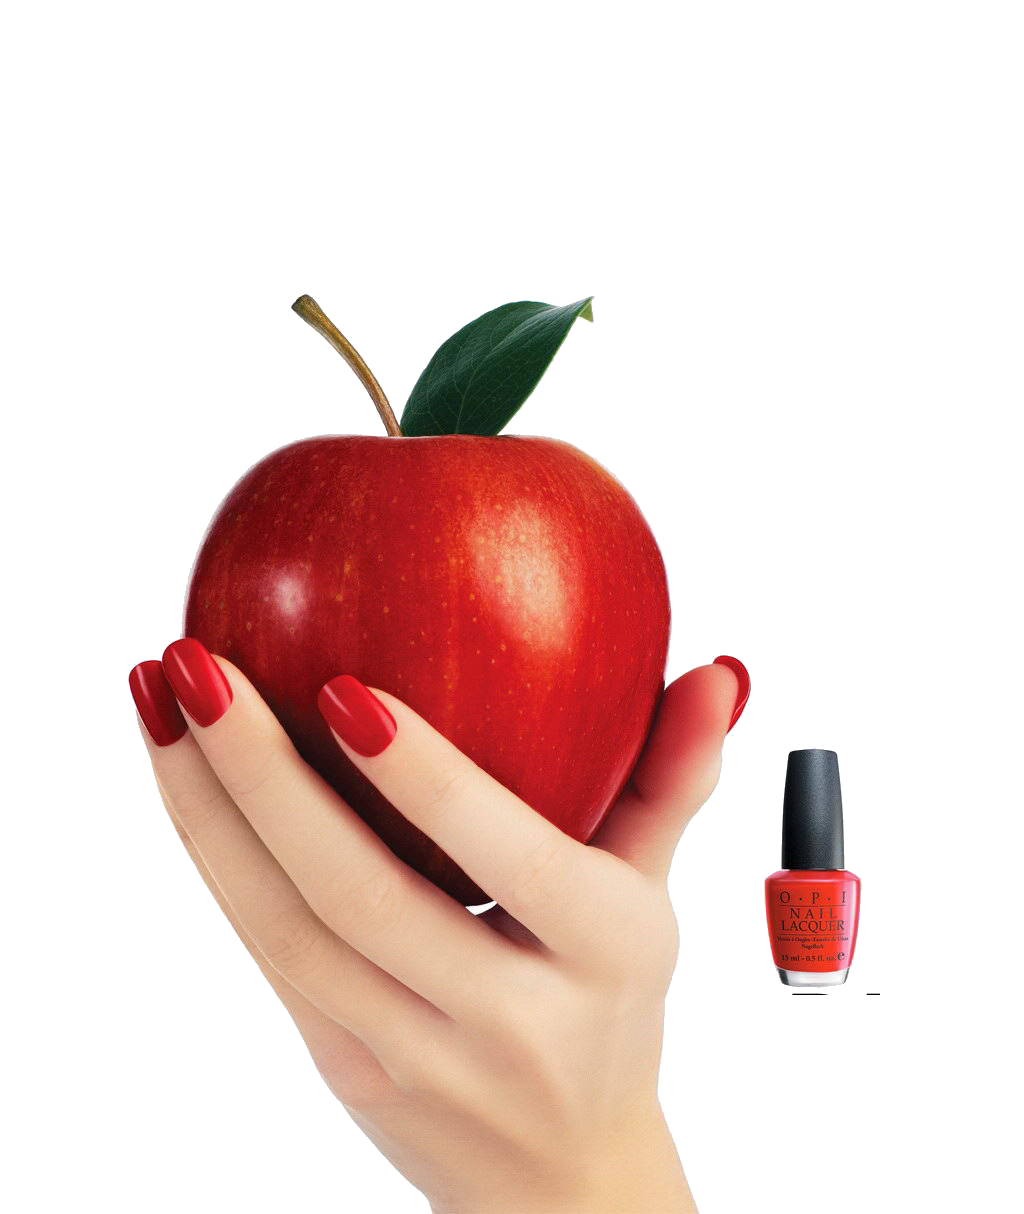 تصویر دوربری شده png با طرح ناخن قرمز رنگ و سیب